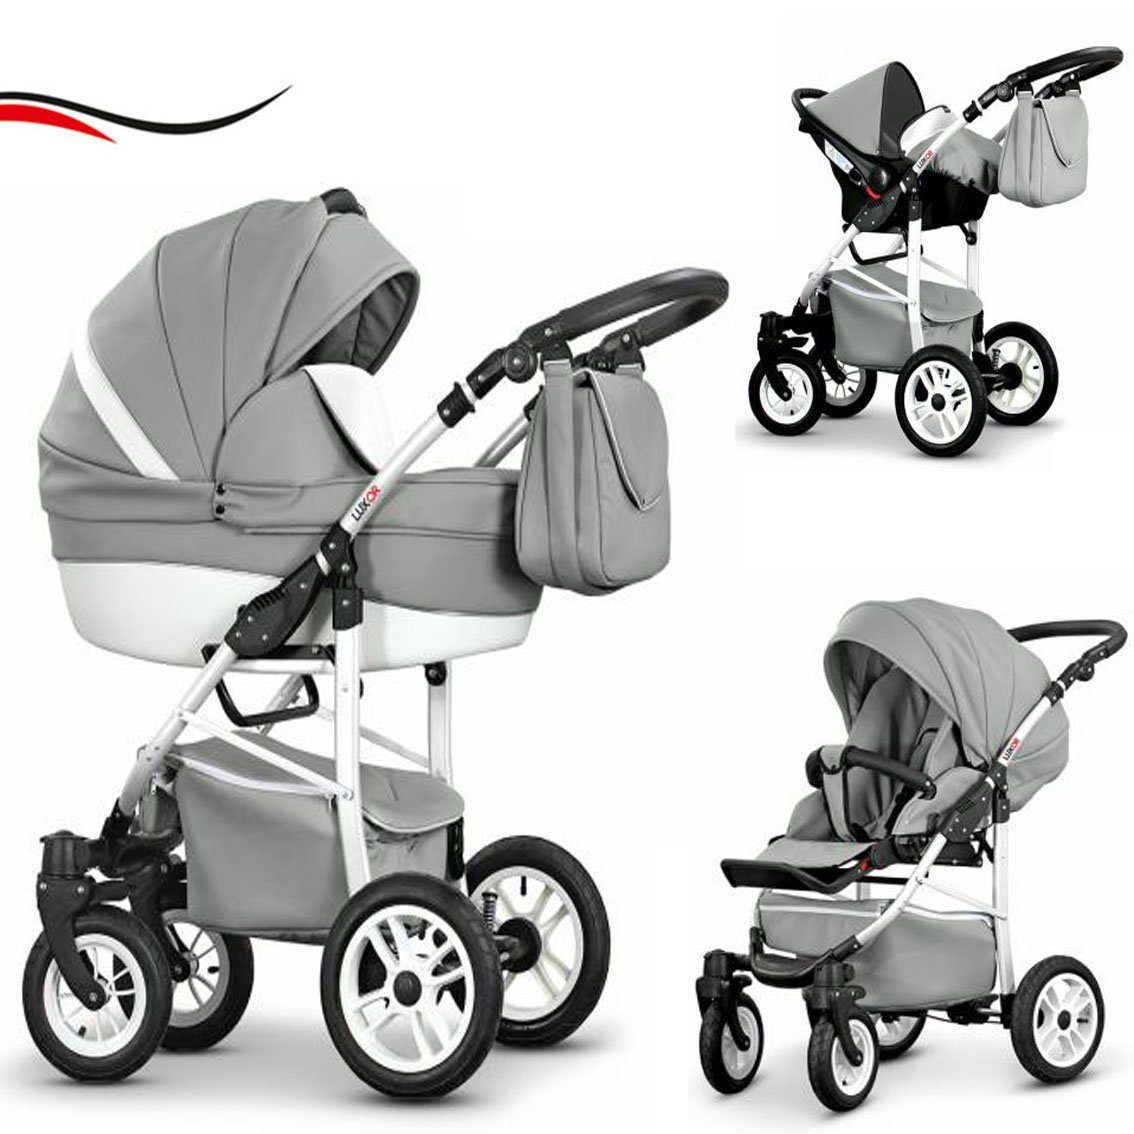 [Inländisches reguläres Produkt] babies-on-wheels Kombi-Kinderwagen 1 - 3 Grau-Weiß ECO Teile in Cosmo 29 - Kunstleder 16 Farben Kinderwagen-Set in